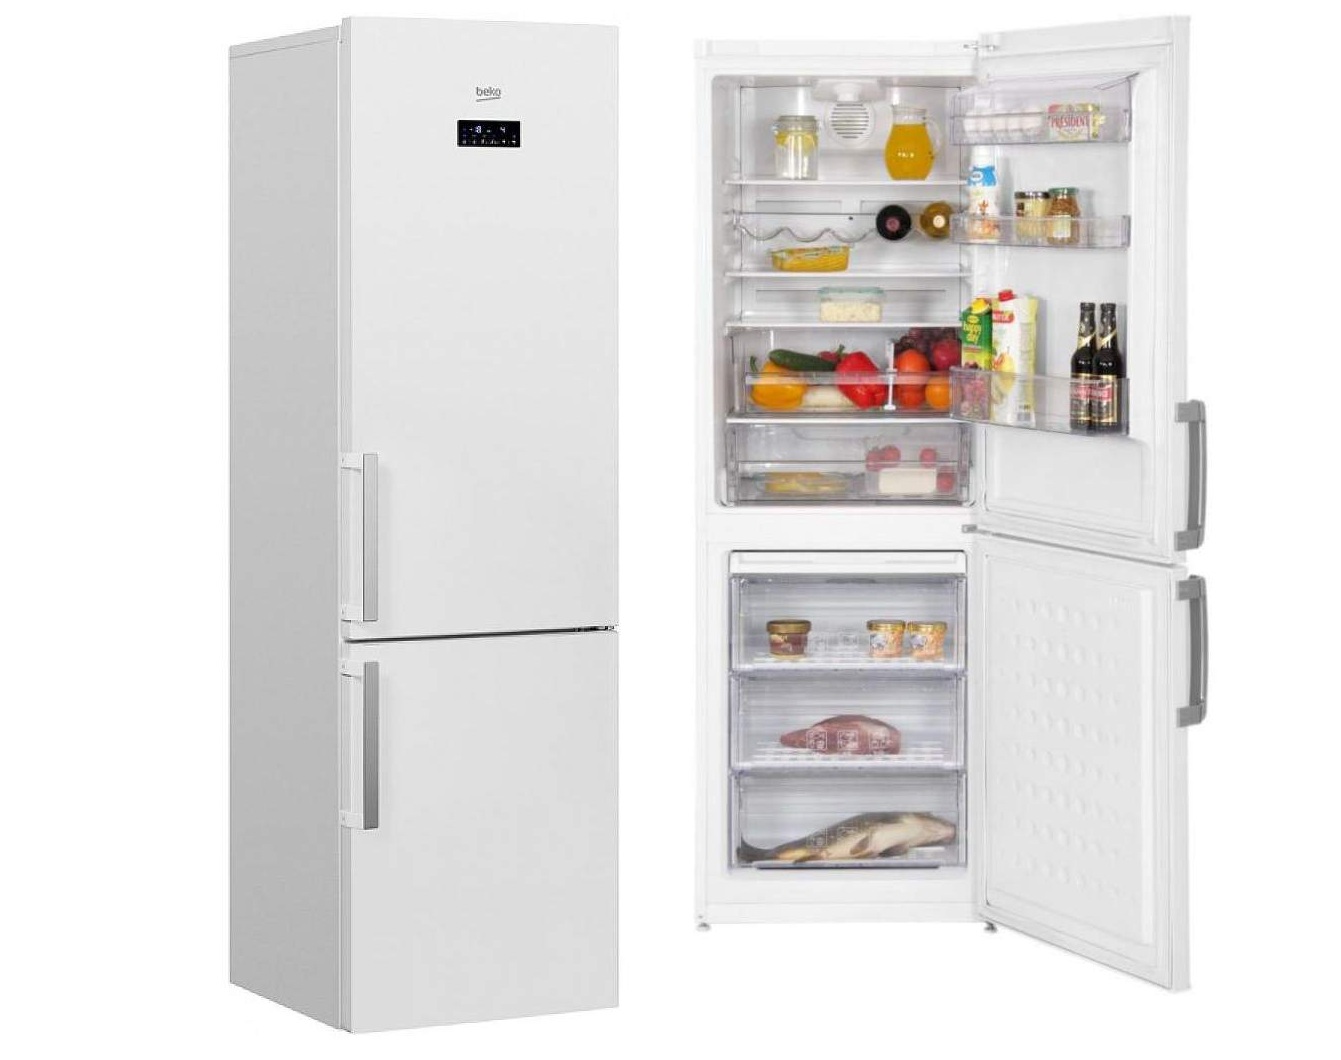 холодильник beko rcnk320e21w, купить в Красноярске холодильник beko rcnk320e21w,  купить в Красноярске дешево холодильник beko rcnk320e21w, купить в Красноярске минимальной цене холодильник beko rcnk320e21w